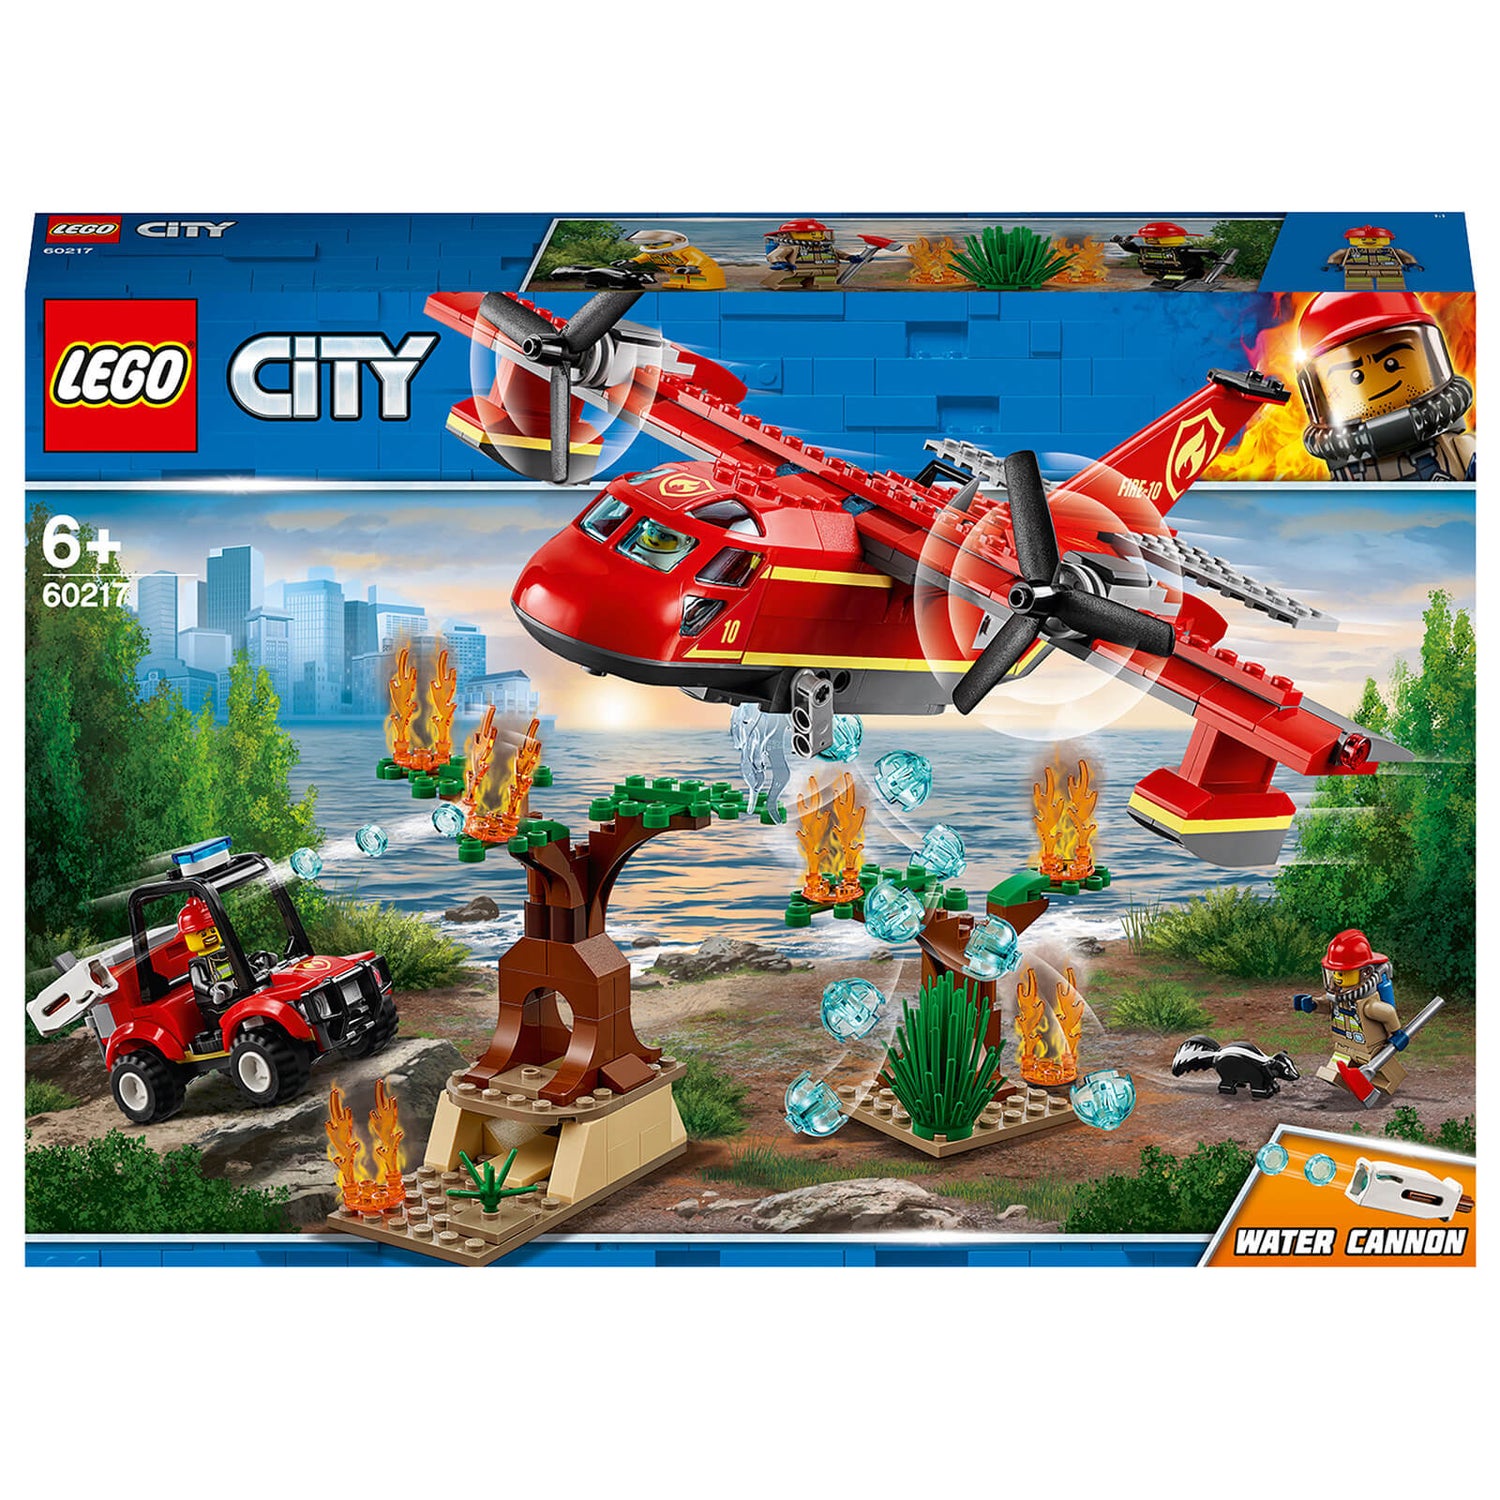 uddøde Windswept Orphan LEGO City: Fire Plane Toy Aeroplane (60217) Toys - Zavvi US